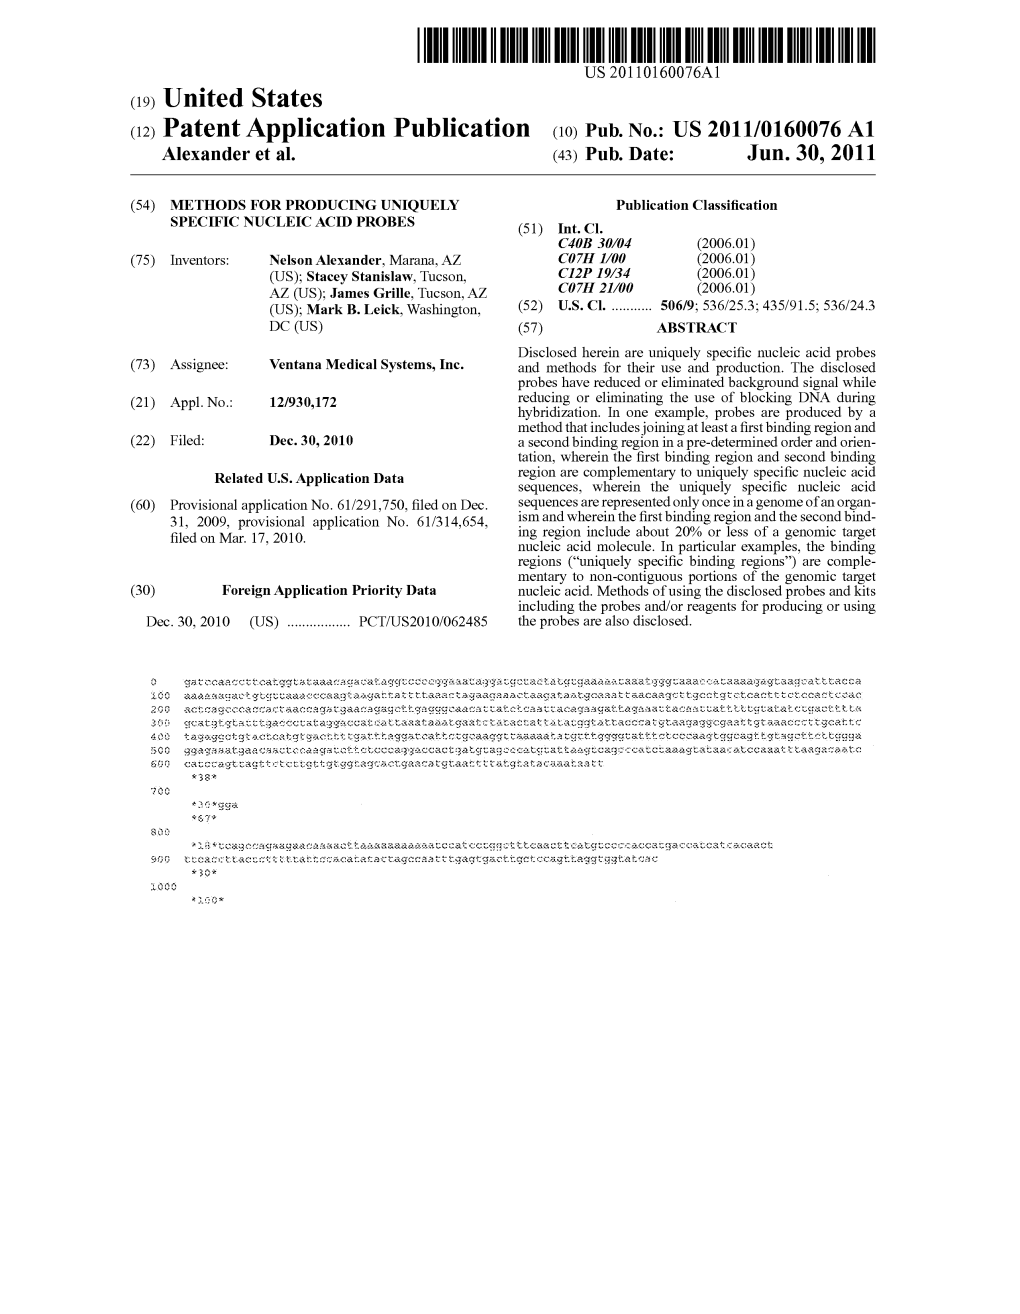 (12) Patent Application Publication (10) Pub. No.: US 2011/0160076 A1 Alexander Et Al